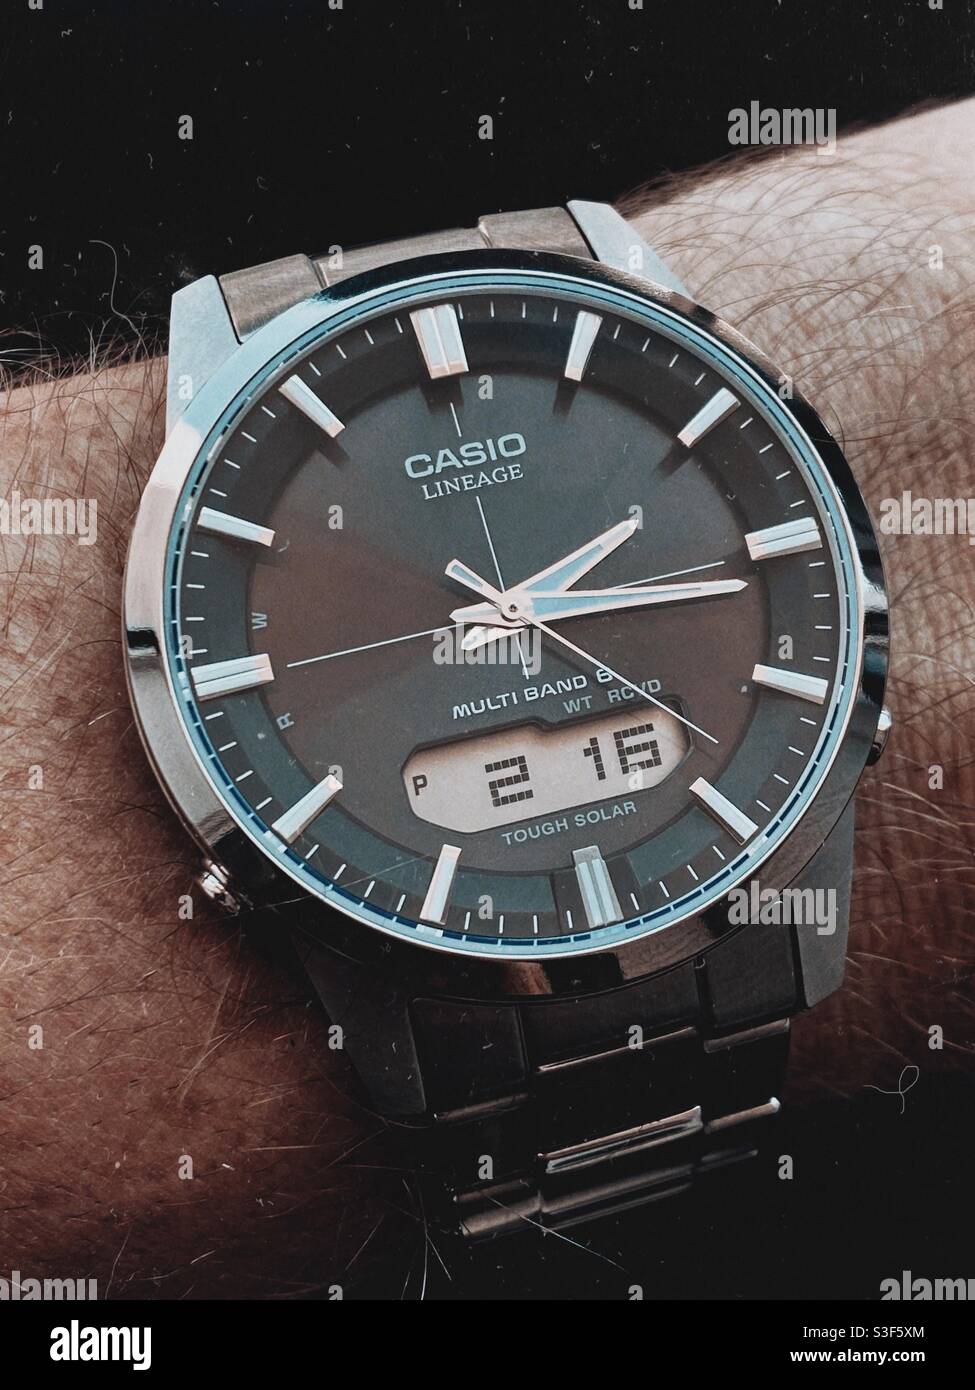 Casio Waveceptor Lineage classic anadigi digital analog solar atomic  titanium wrist watch on a black background Stock Photo - Alamy